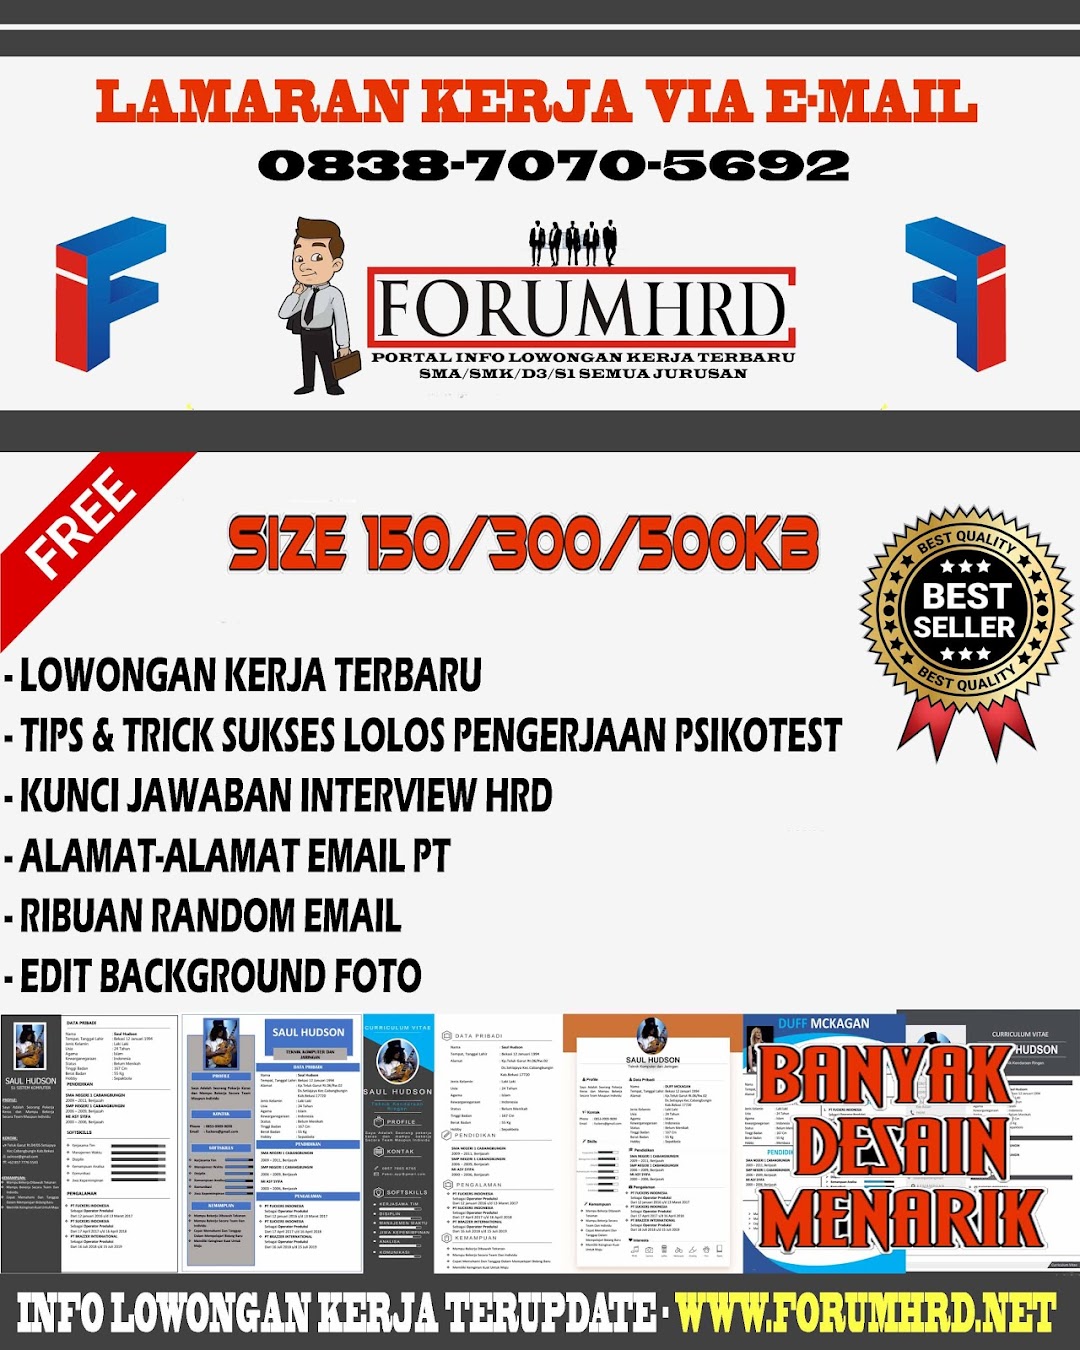 ForumHRD.Net